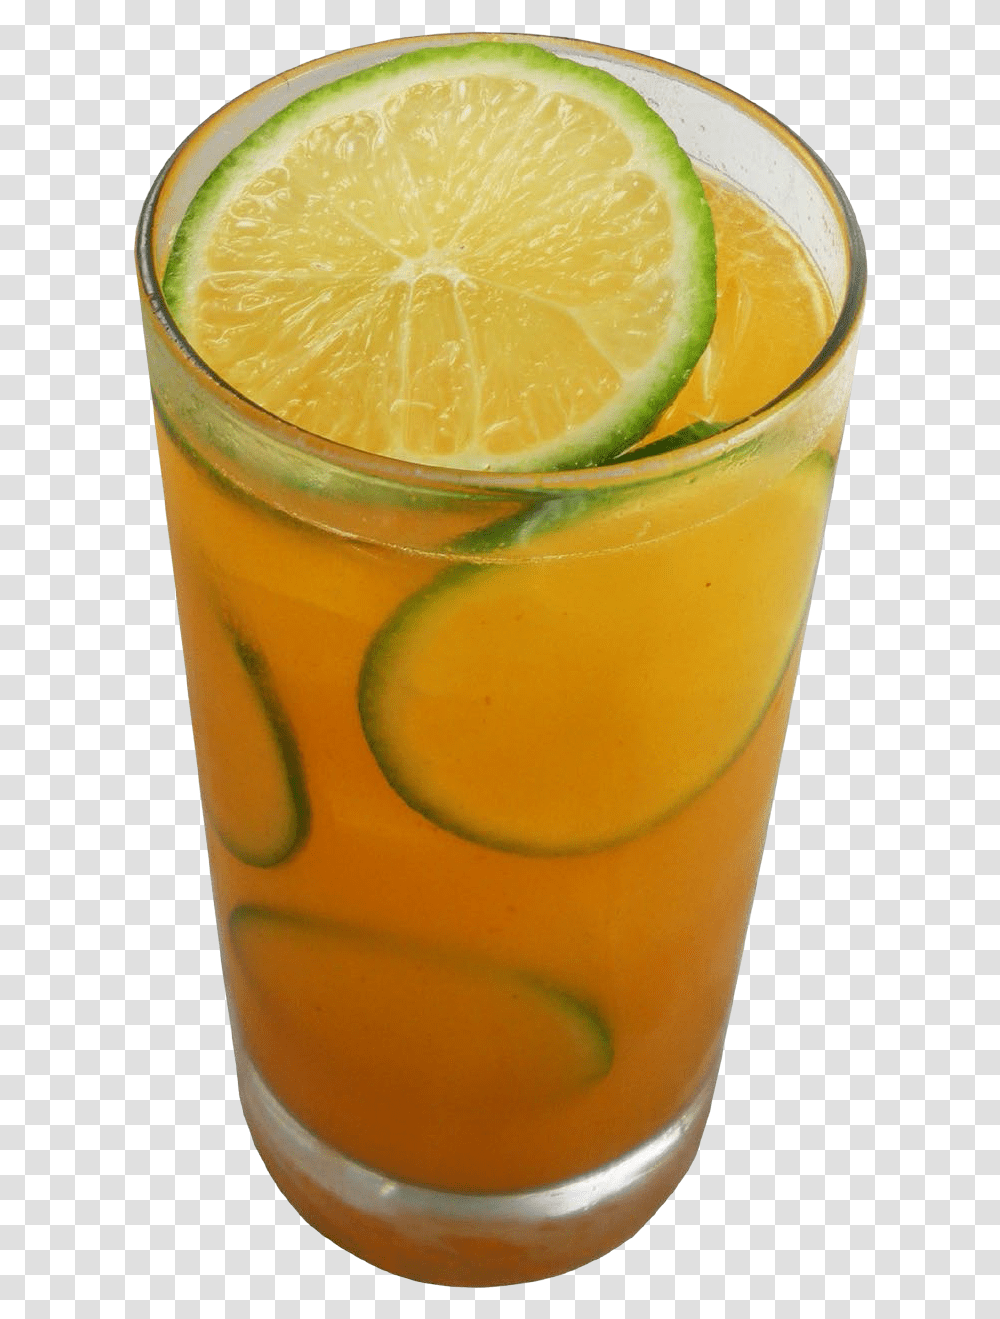 Lemon Download Shikanjvi, Lemonade, Beverage, Drink, Lime Transparent Png